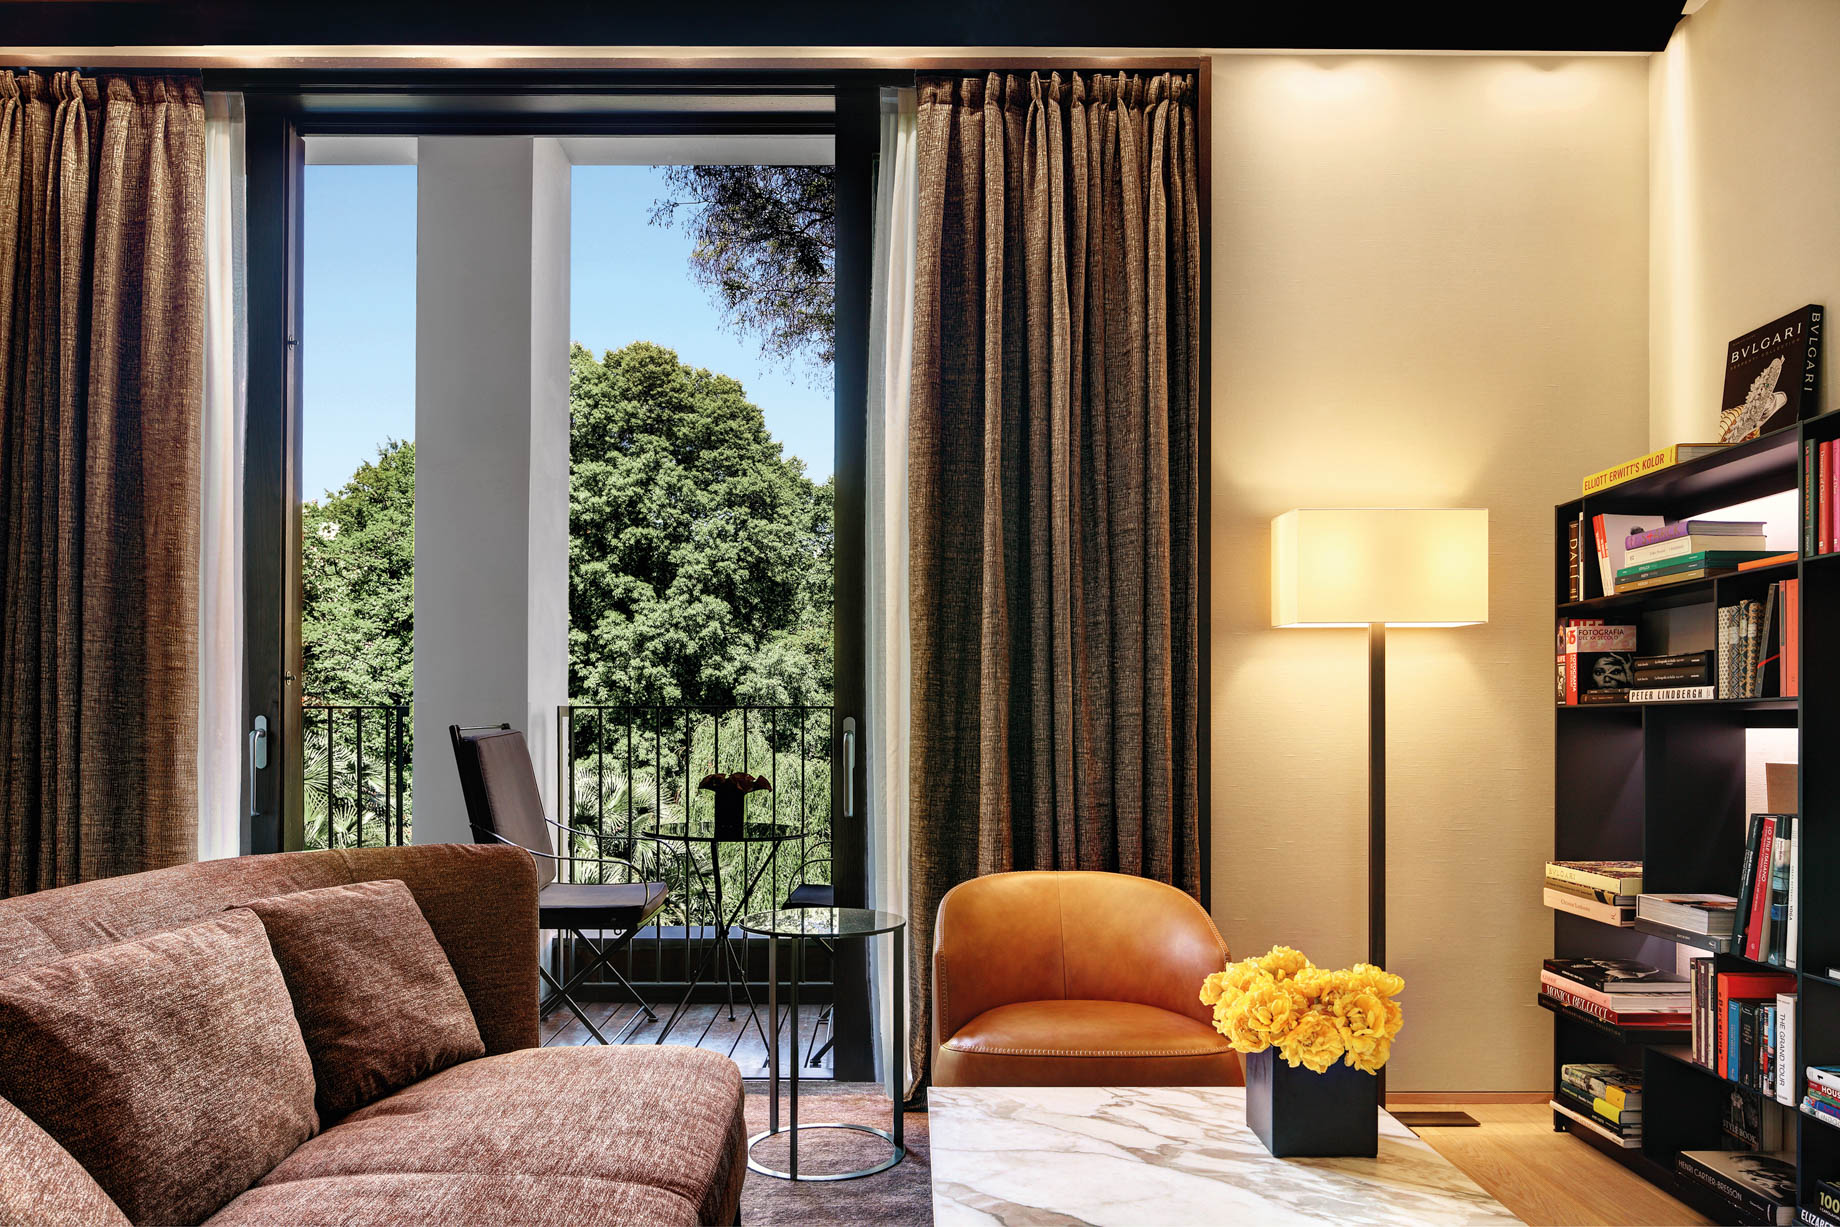 Bvlgari Hotel Milano - Milan, Italy - Superior Suite Living Room